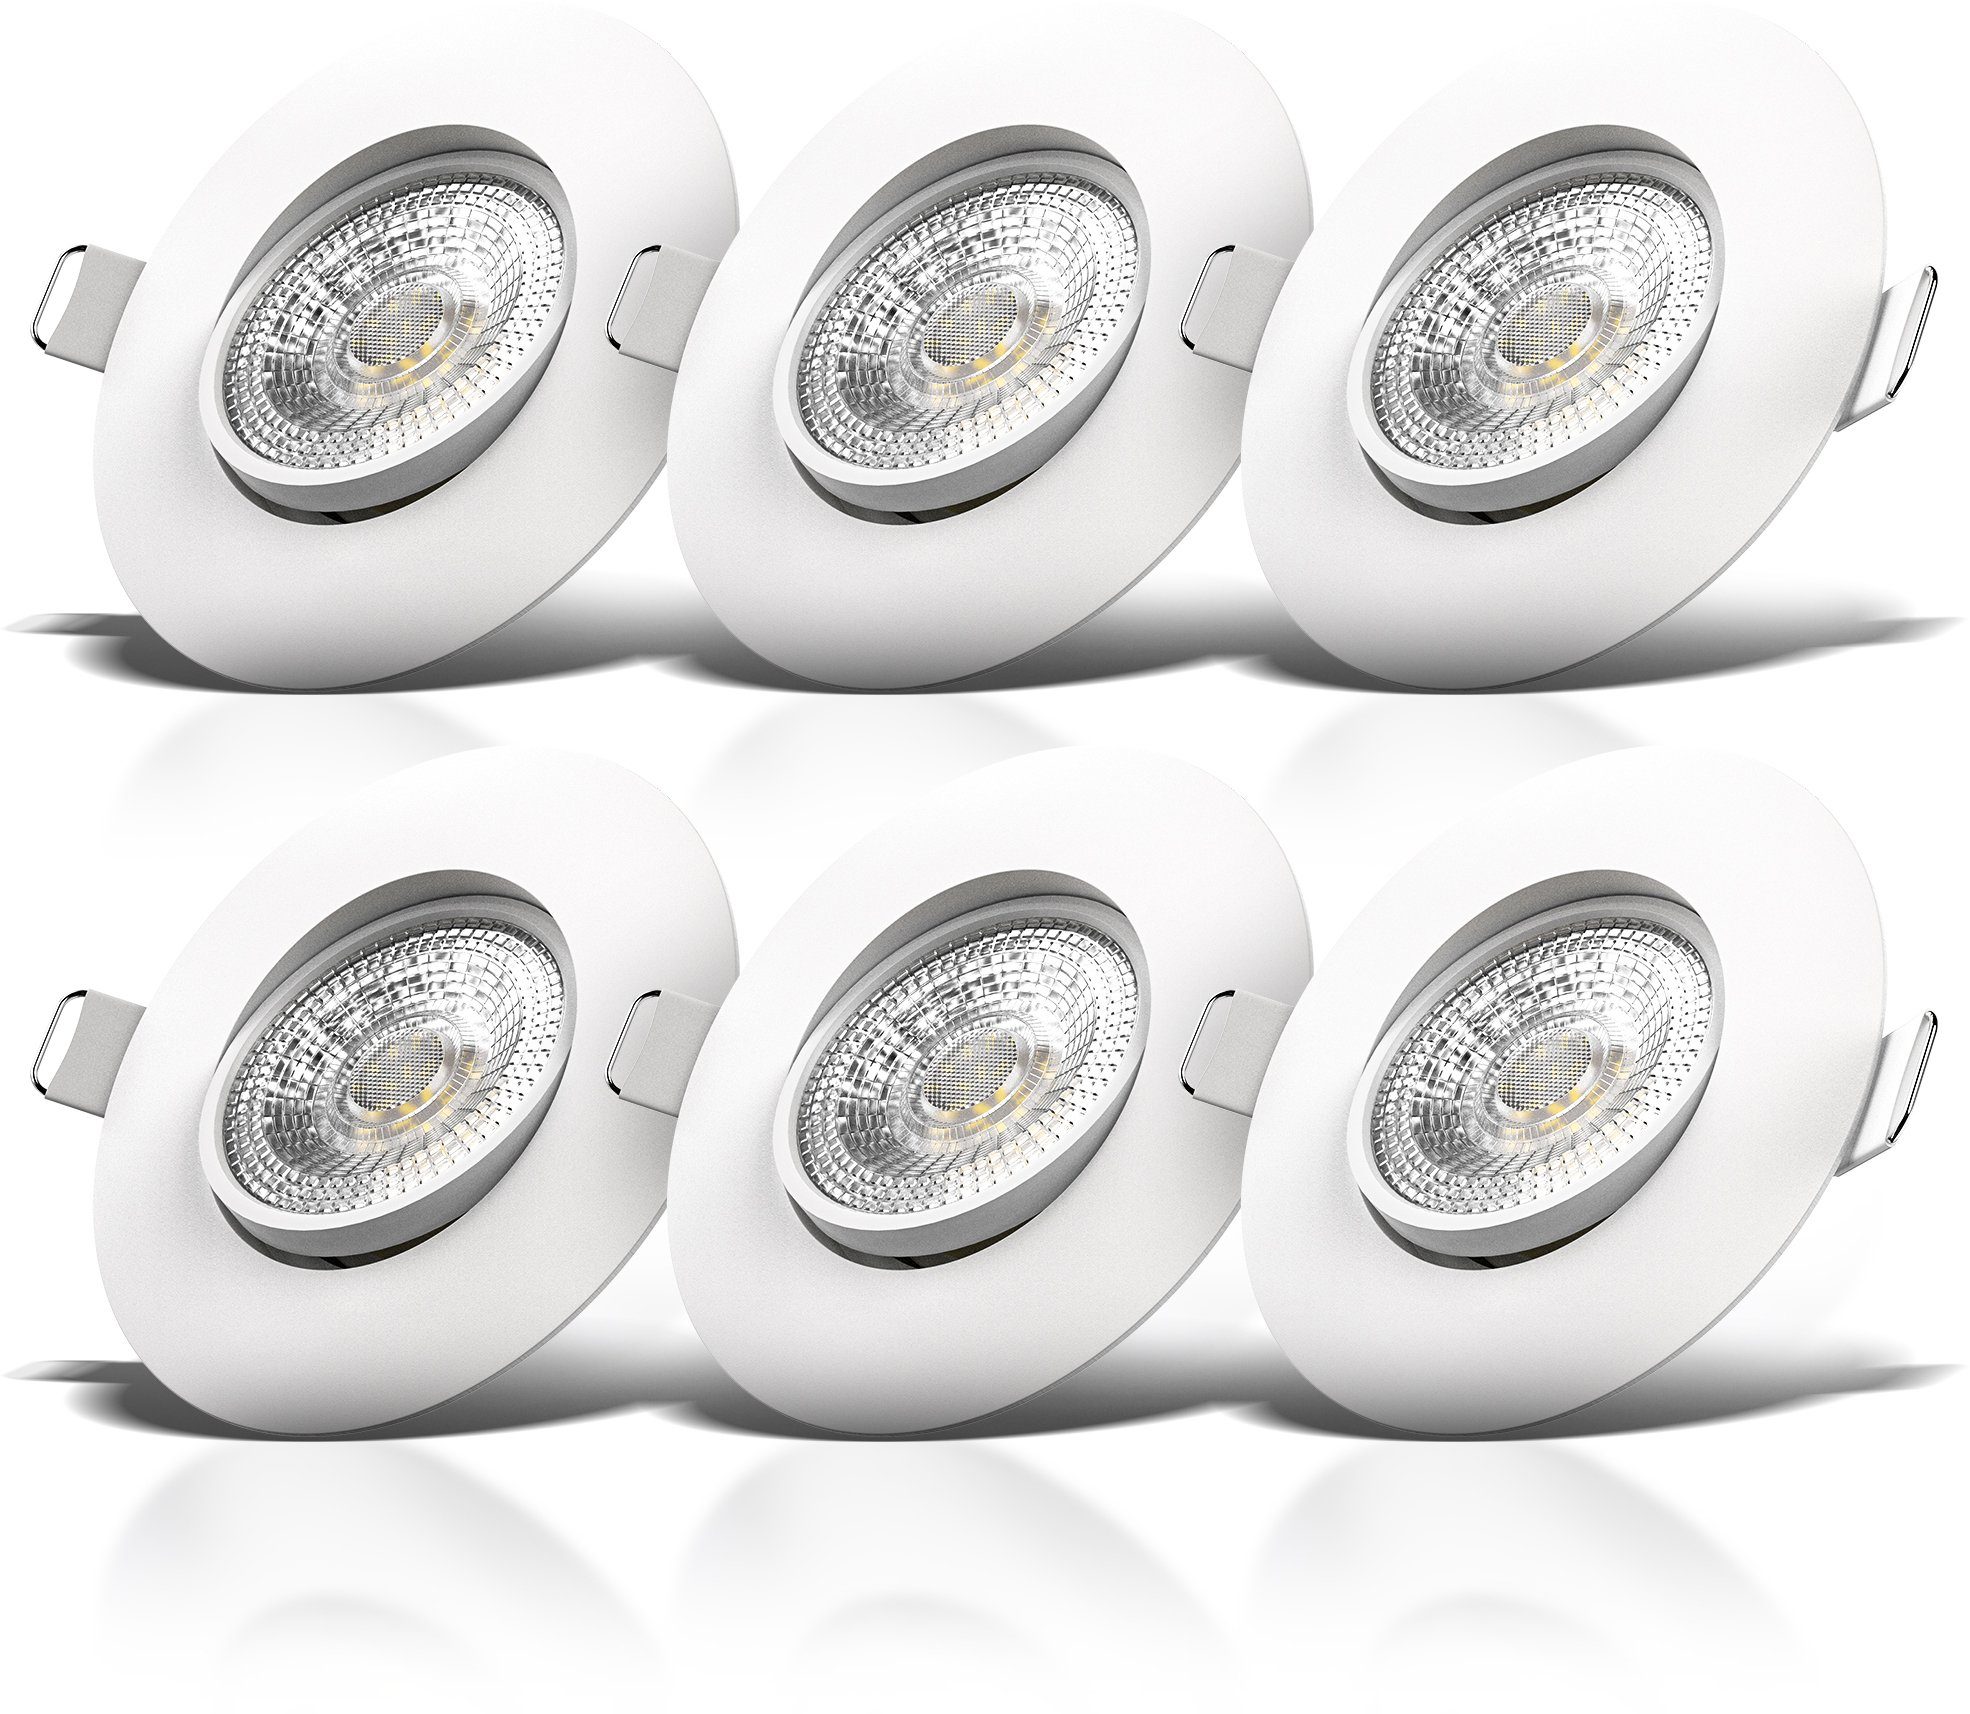 fest LED LED ultra-flach, Einbauleuchte, B.K.Licht Einbauspots, schwenkbar, Warmweiß, Deckenspots, integriert, warmweiß IP23,